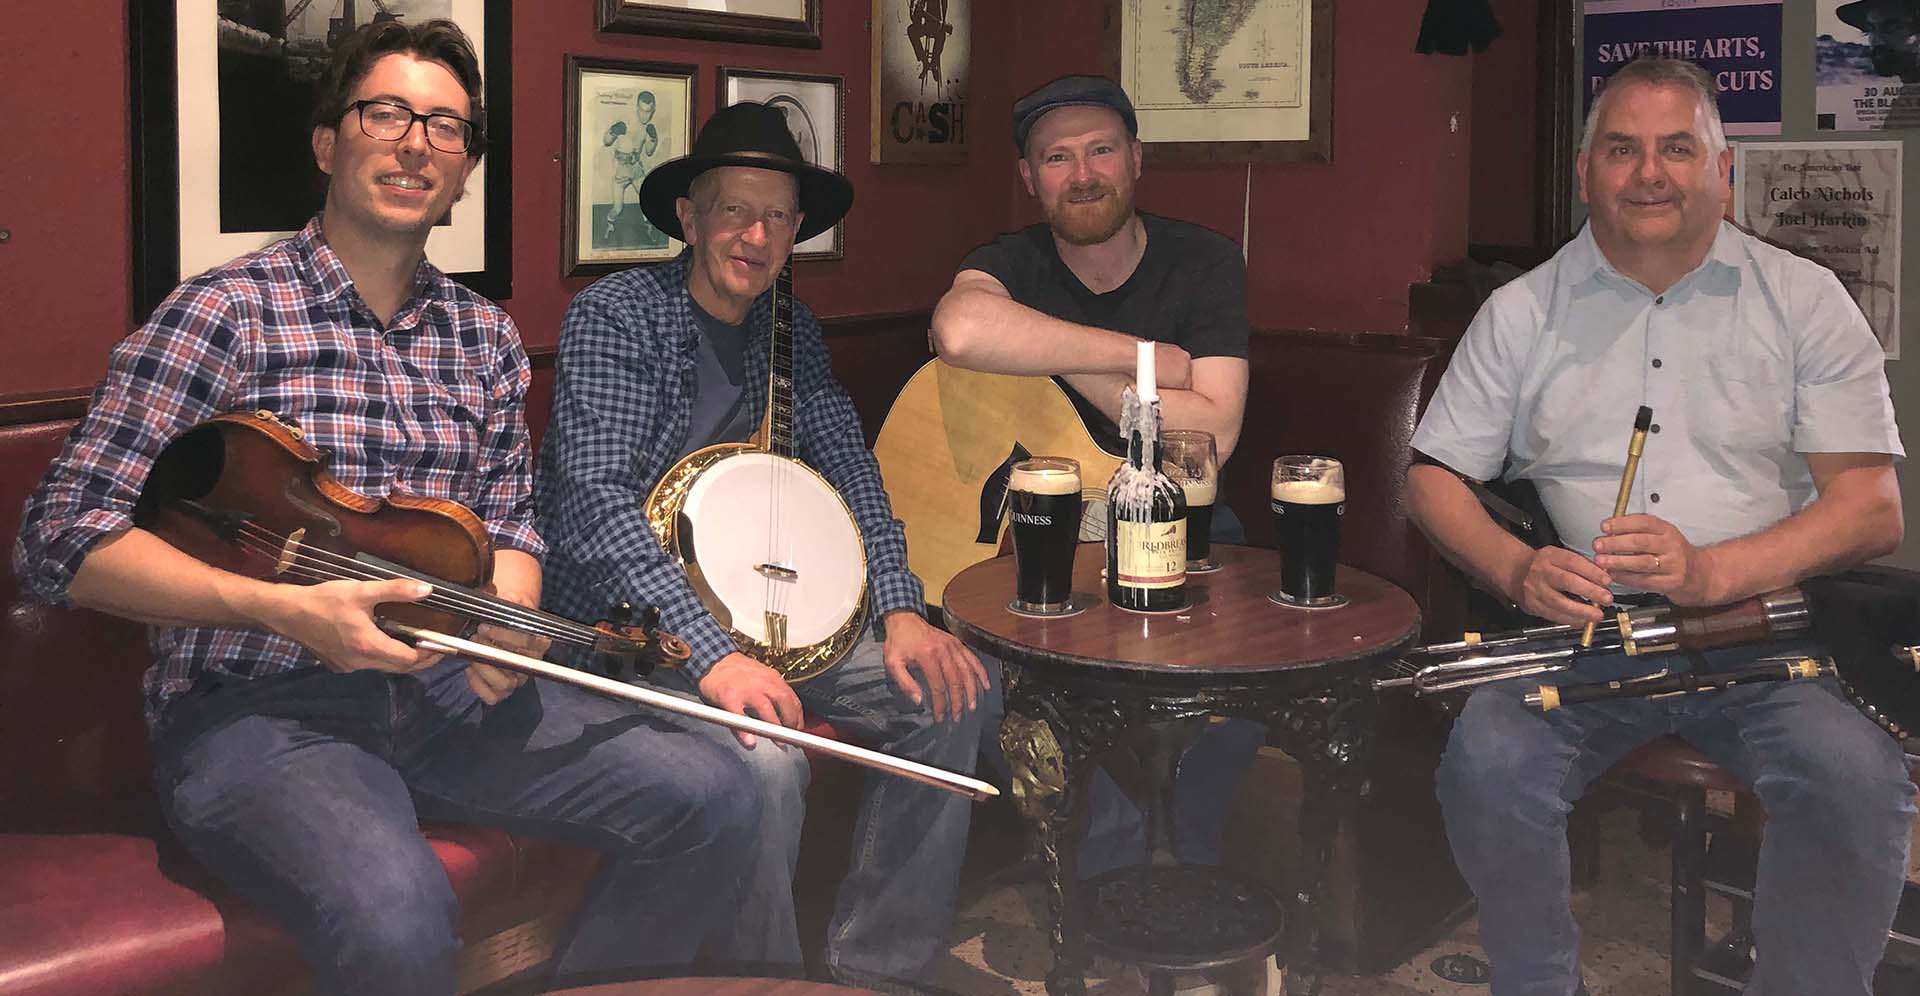 Gruppenbild der irischen Band Craobh Rua